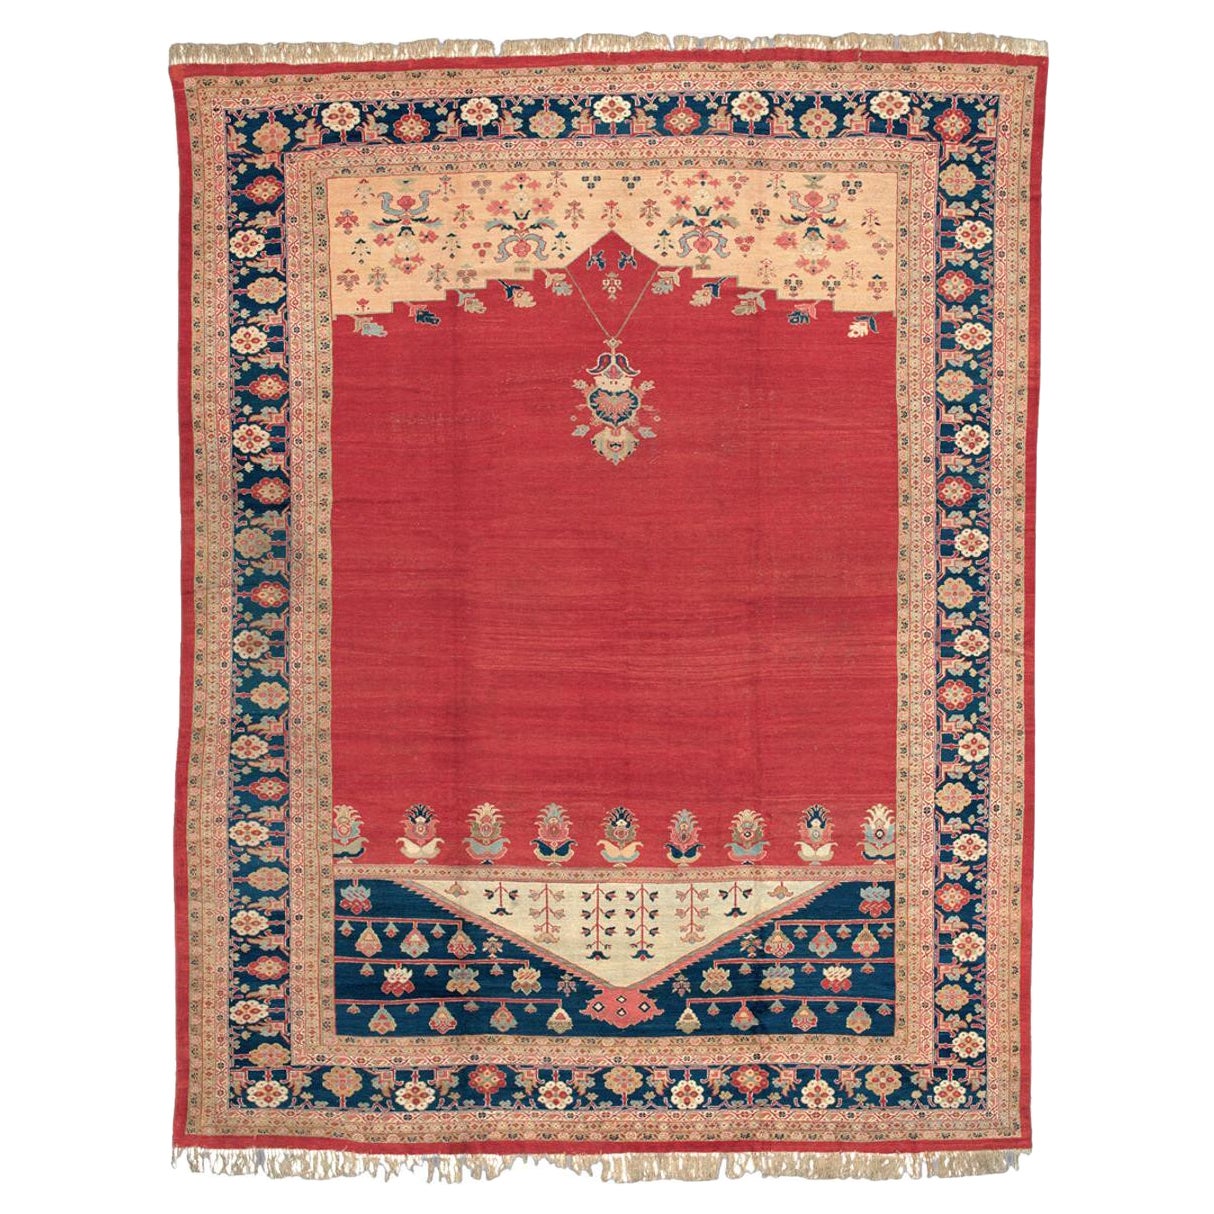 Large Antique Ziegler Mahal Carpet, 19th Century